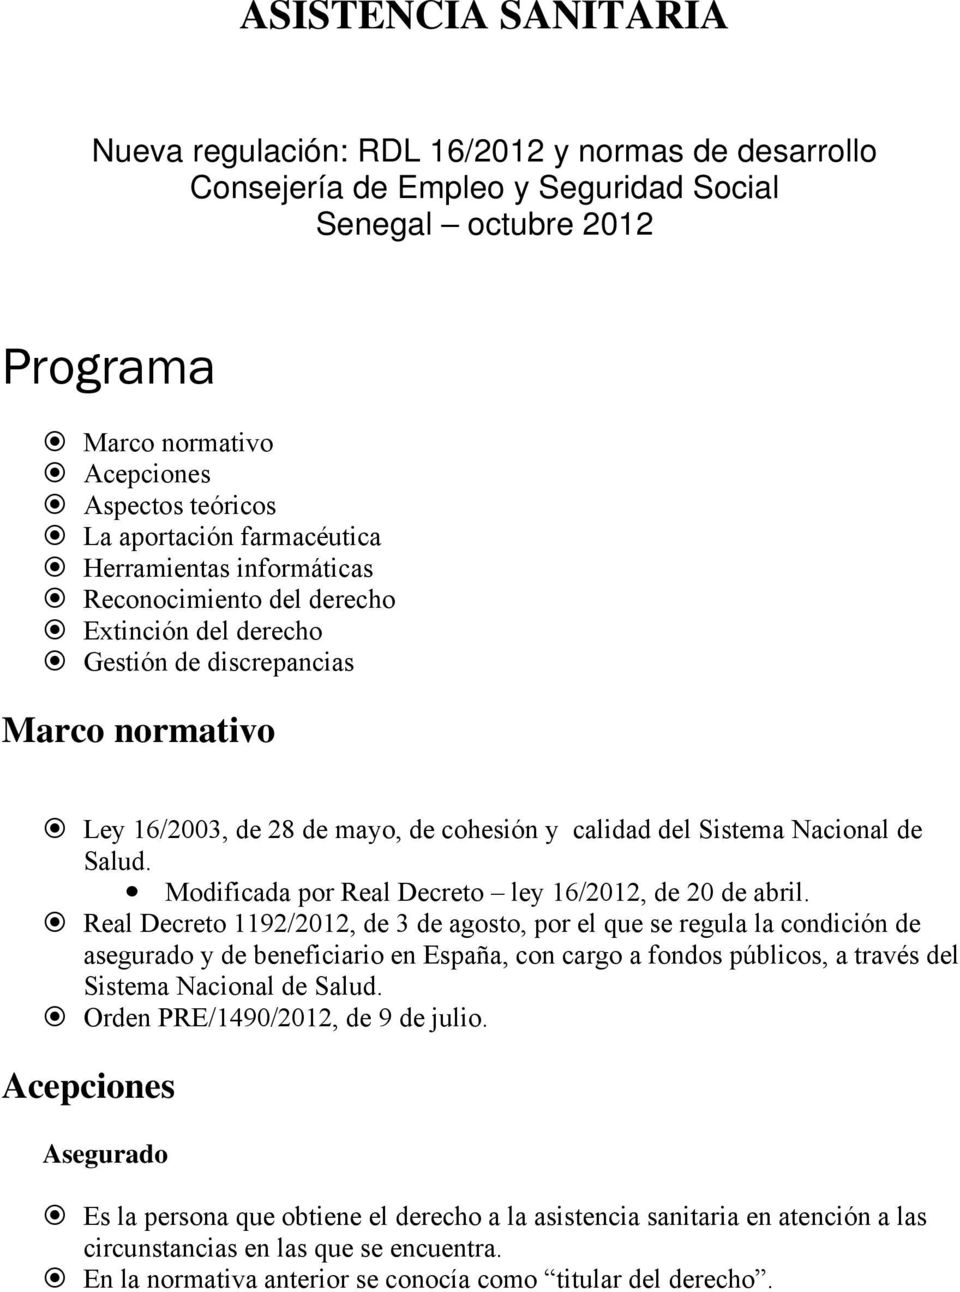 Sistema Nacional de Salud. Modificada por Real Decreto ley 16/2012, de 20 de abril.